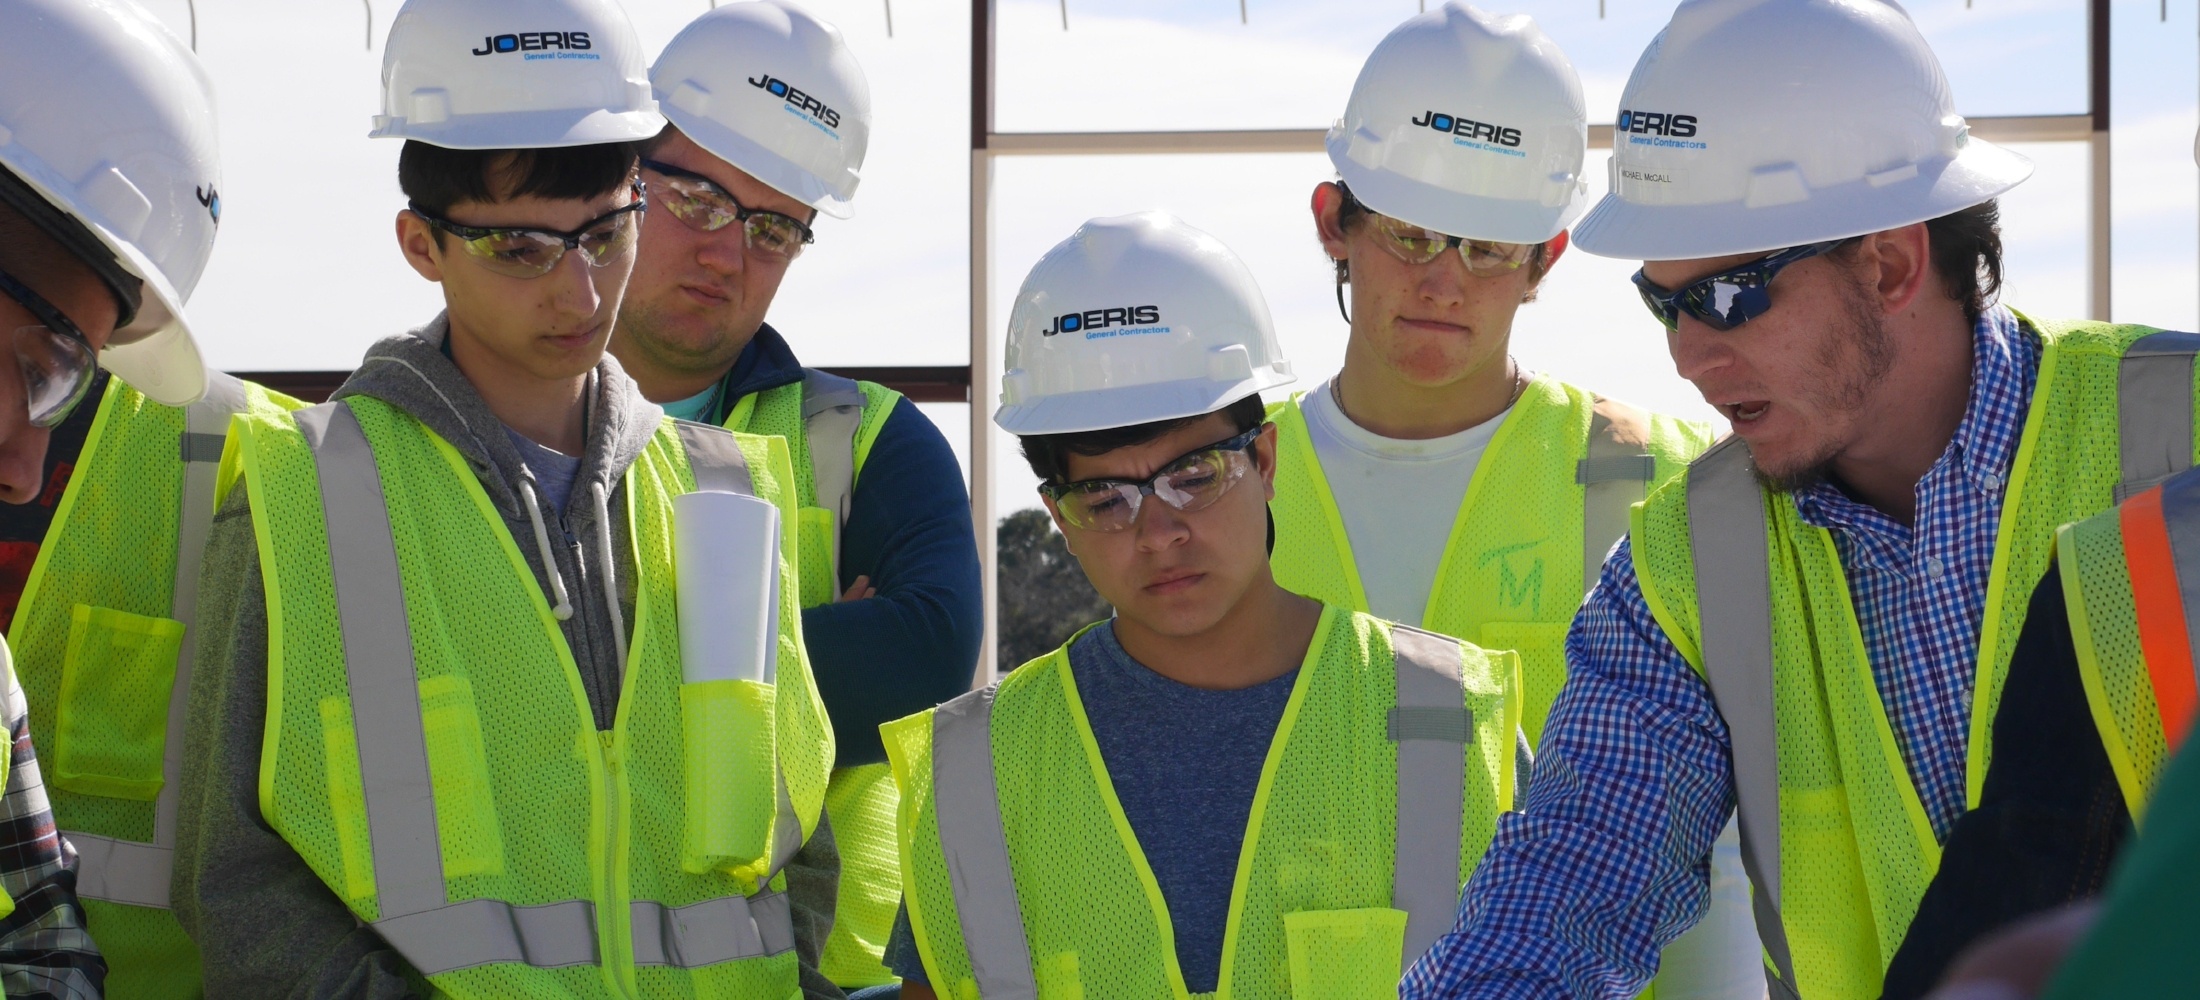 Joeris employees reviewing construction schematics at a job site.